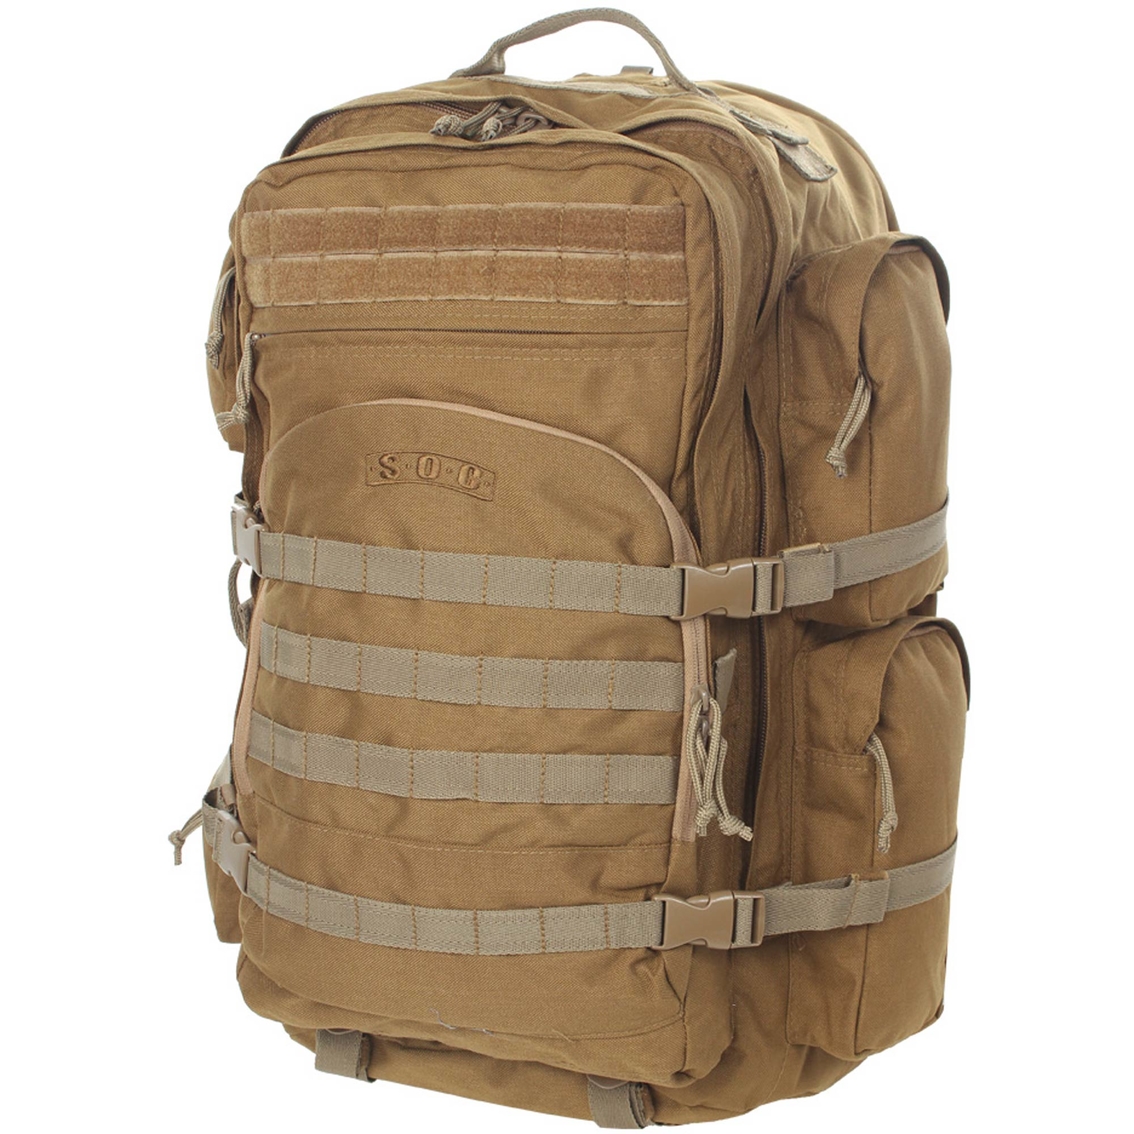 Sandpiper Of California Long Range Bugout Bag | Backpacks